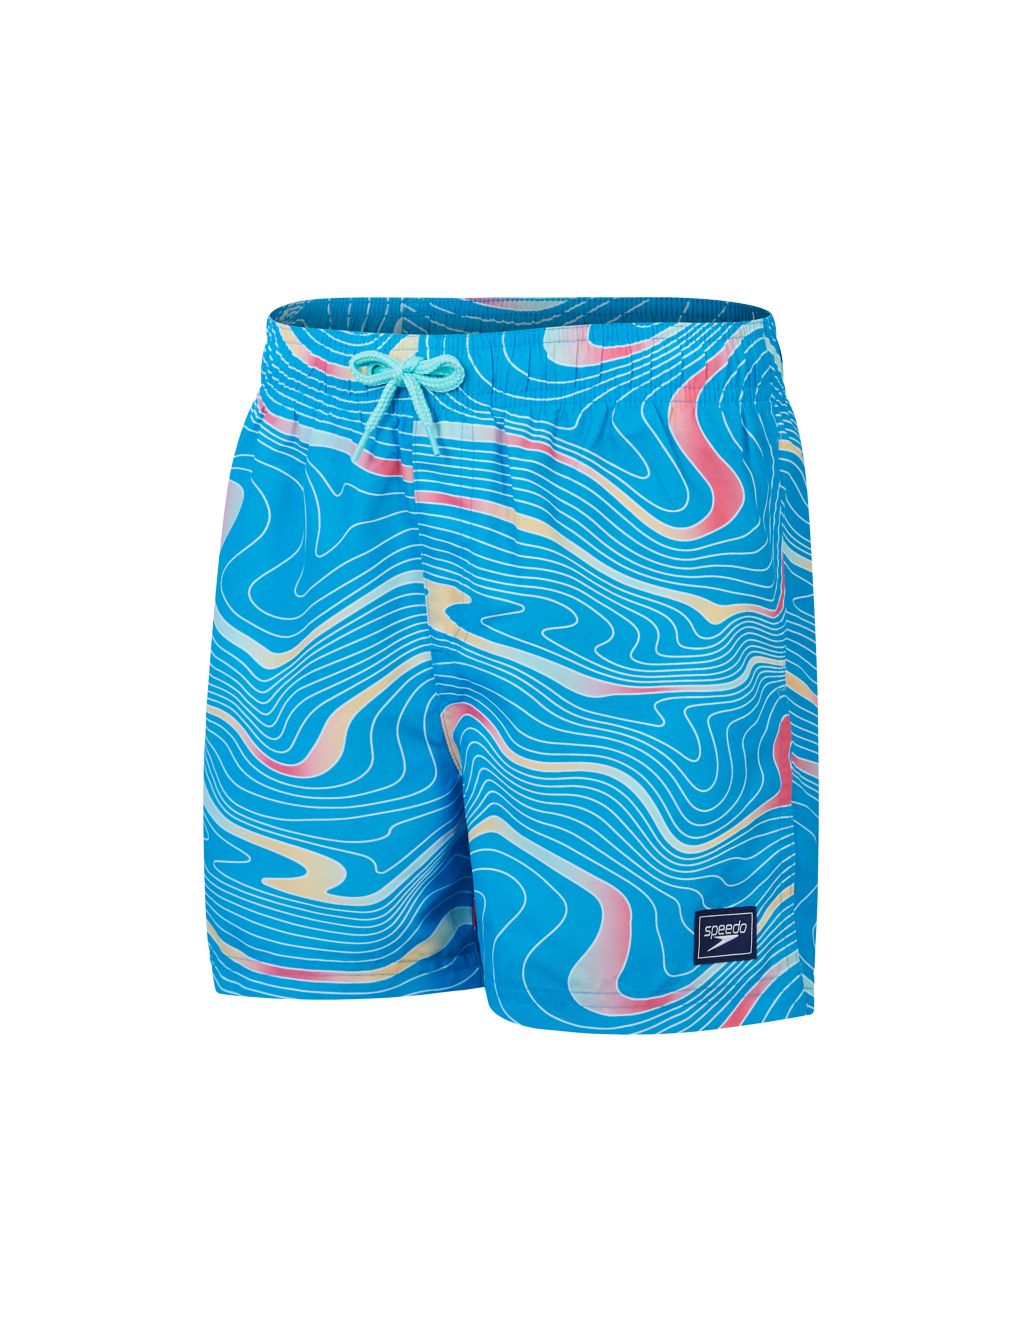 Swim Shorts (5-16 Yrs)